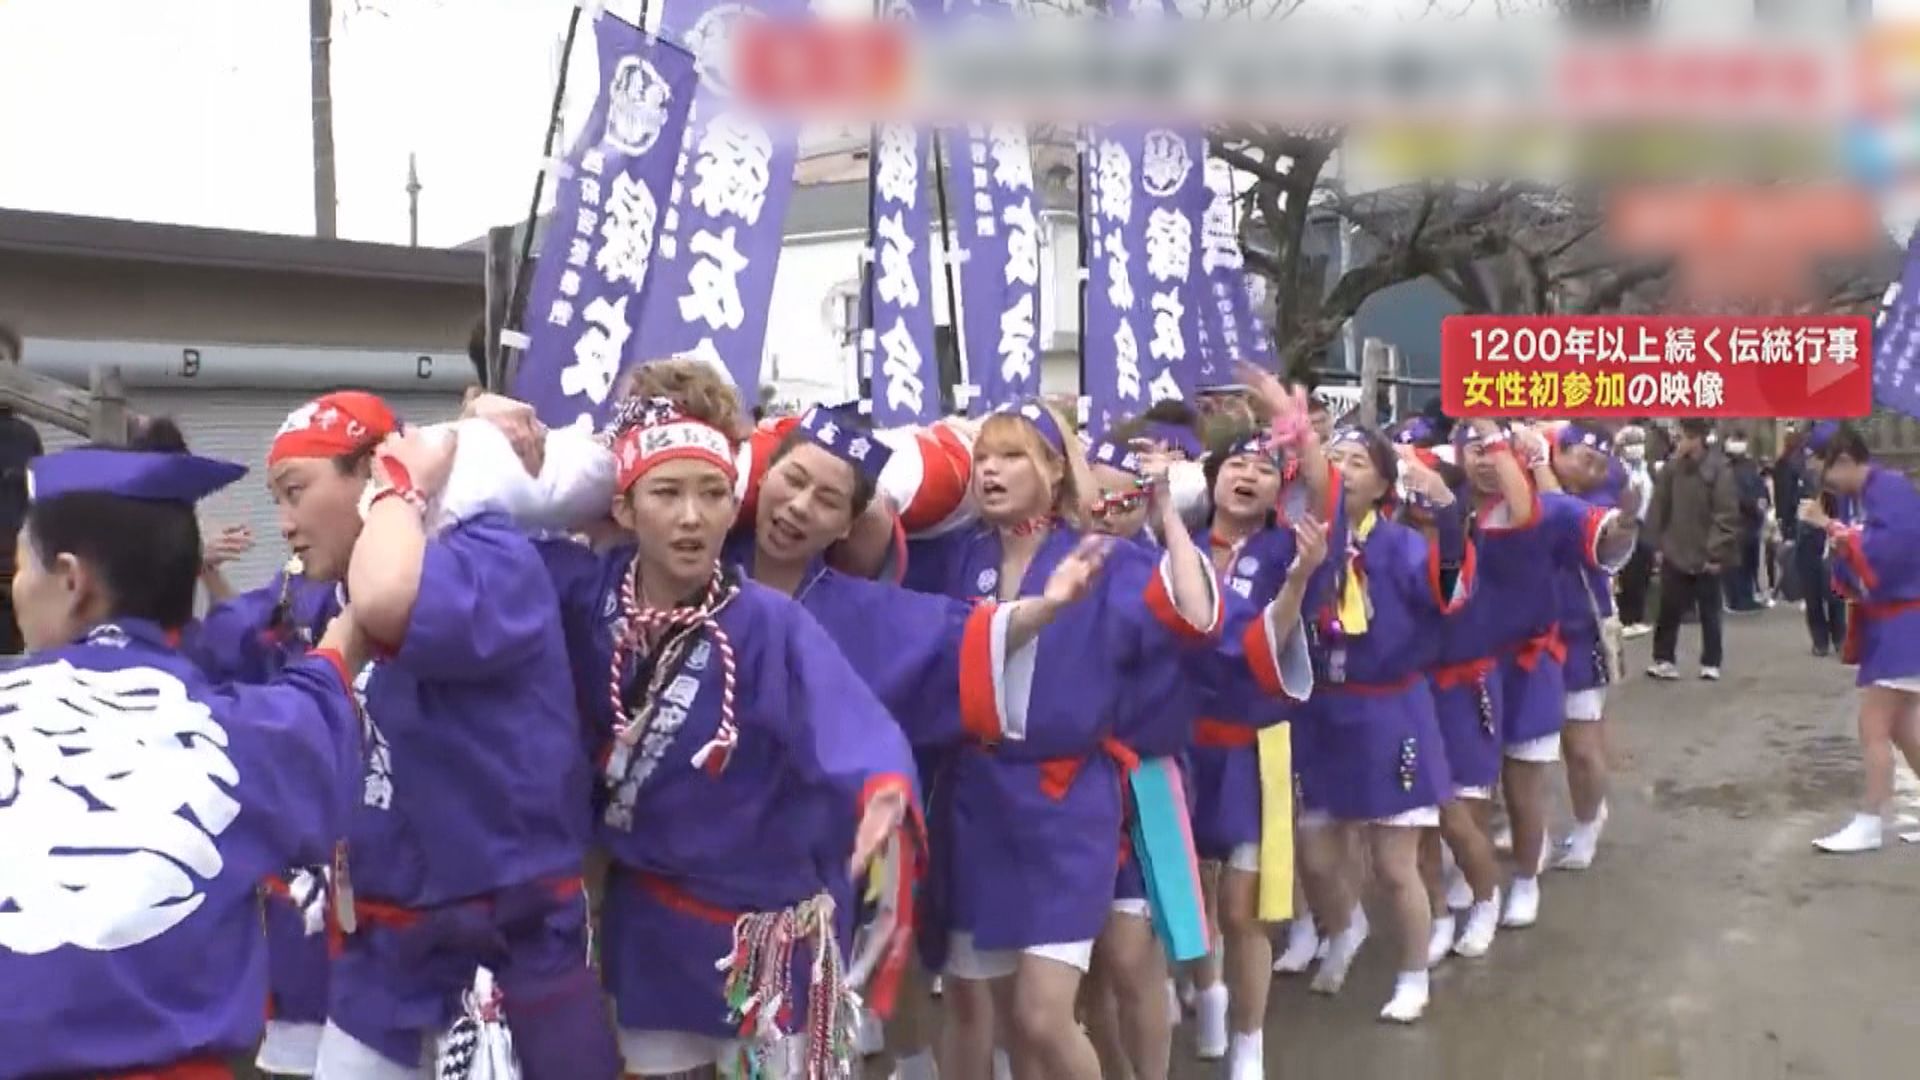 日本逾千年歷史裸祭 首度開放女性參加